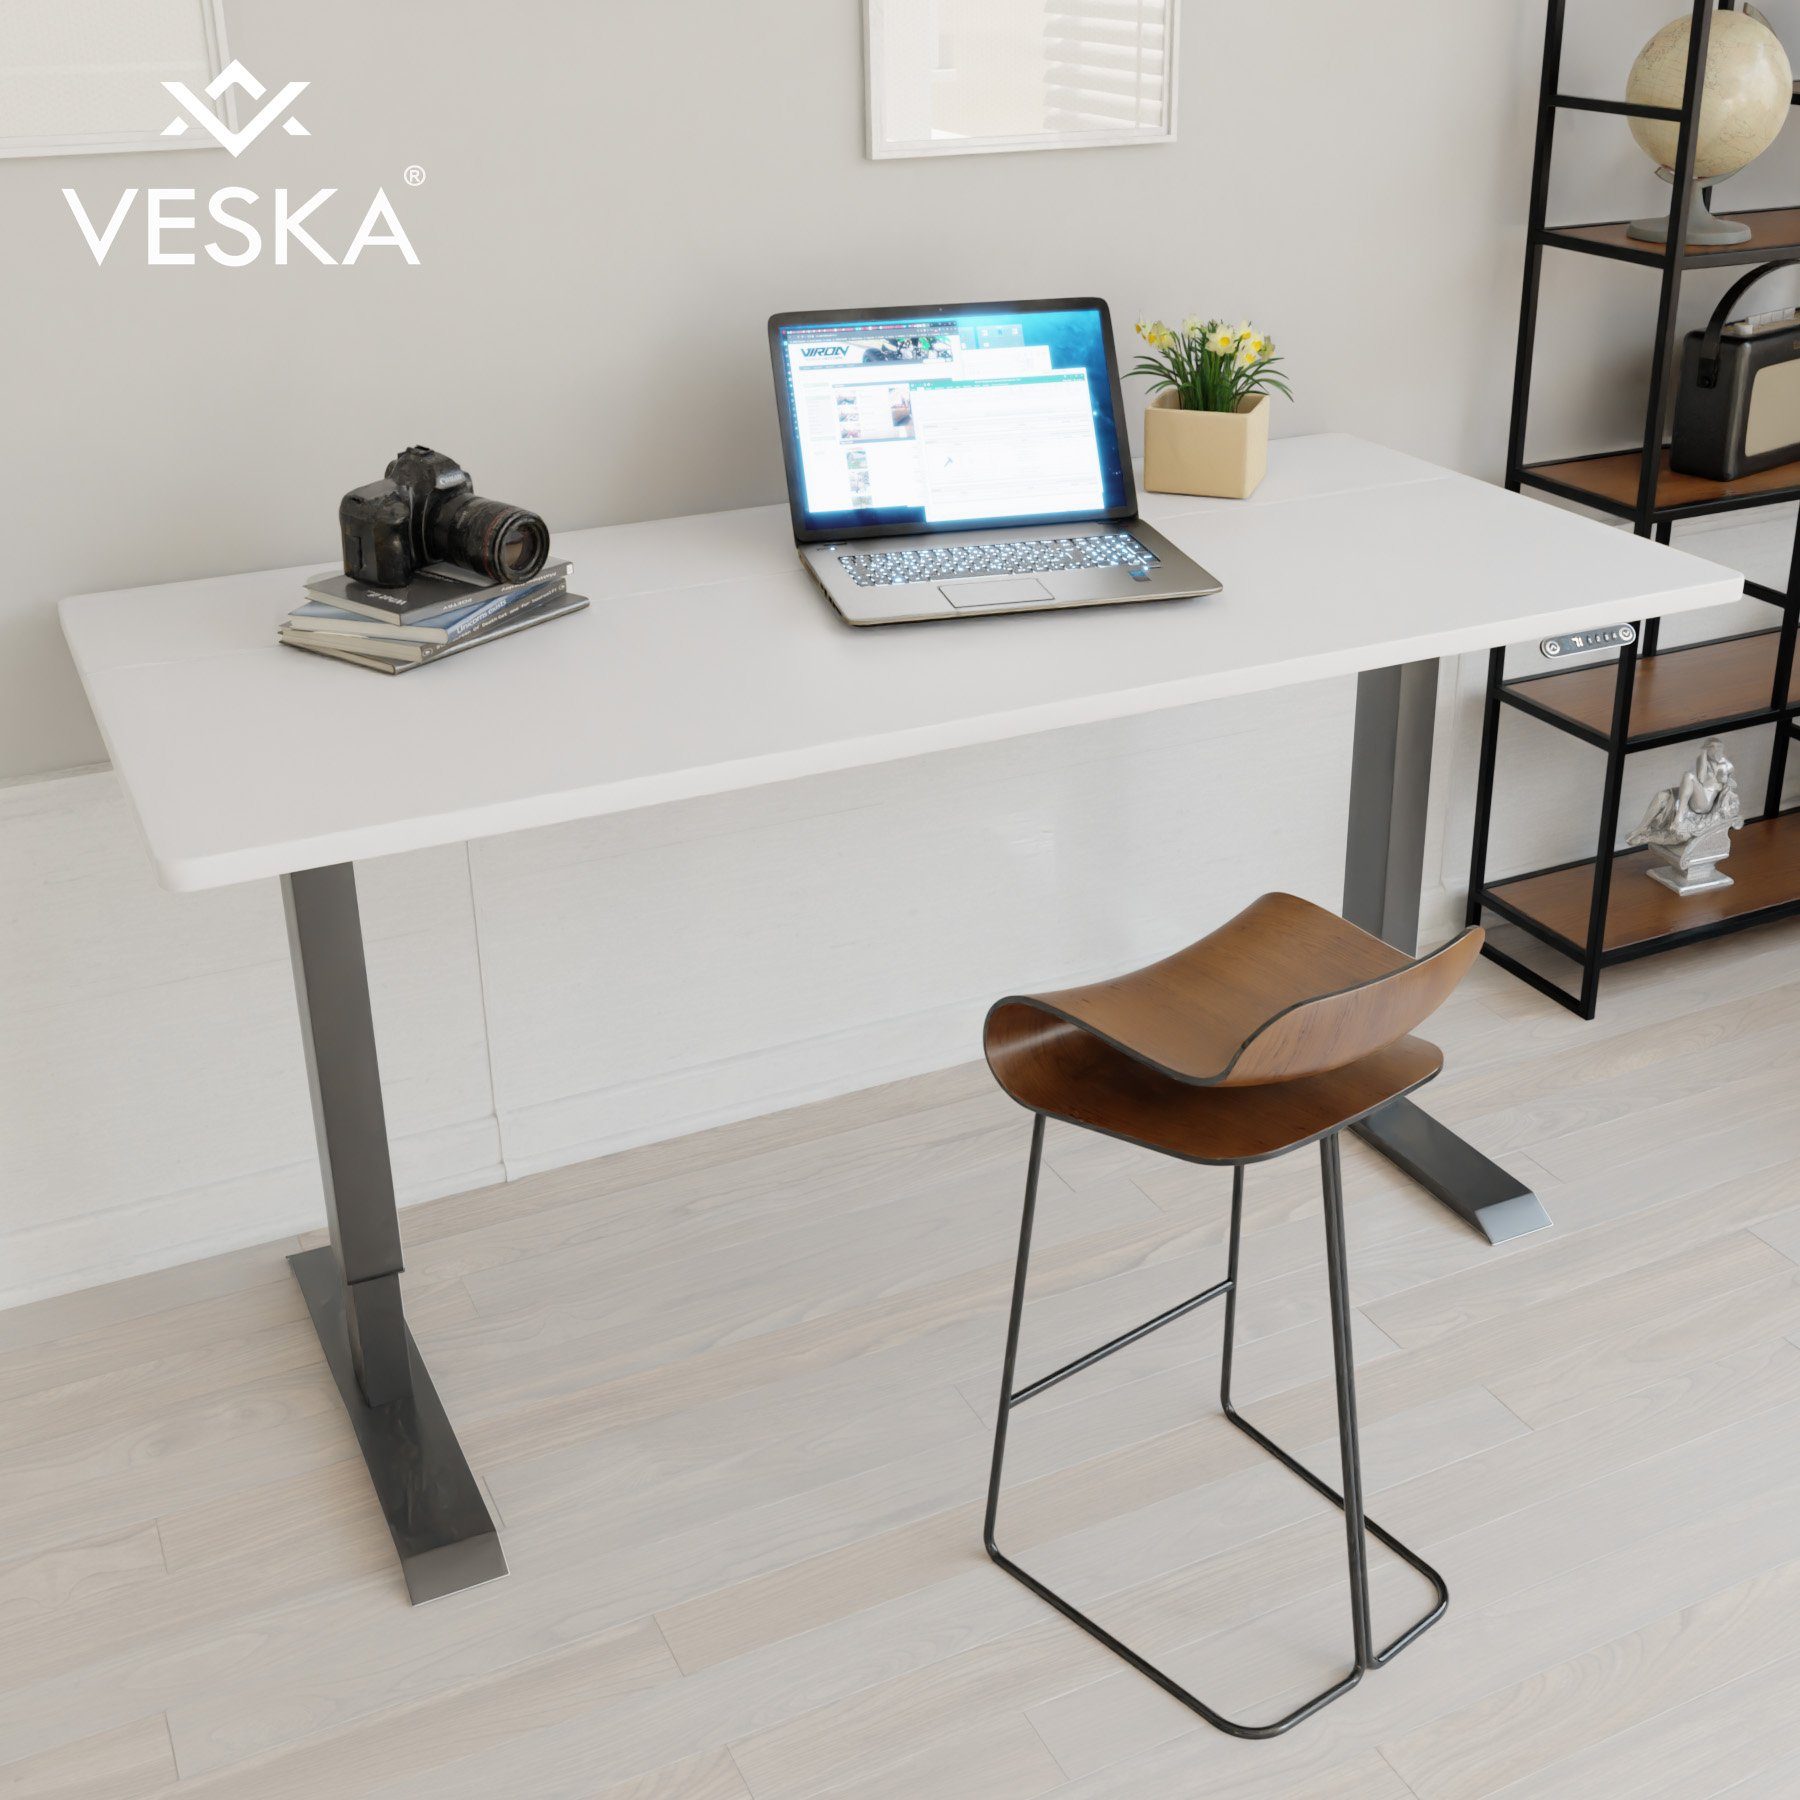 VESKA Schreibtisch Höhenverstellbar 140 x 70 cm - Bürotisch Elektrisch mit Touchscreen - Sitz- & Stehpult Home Office Anthrazit | Weiß